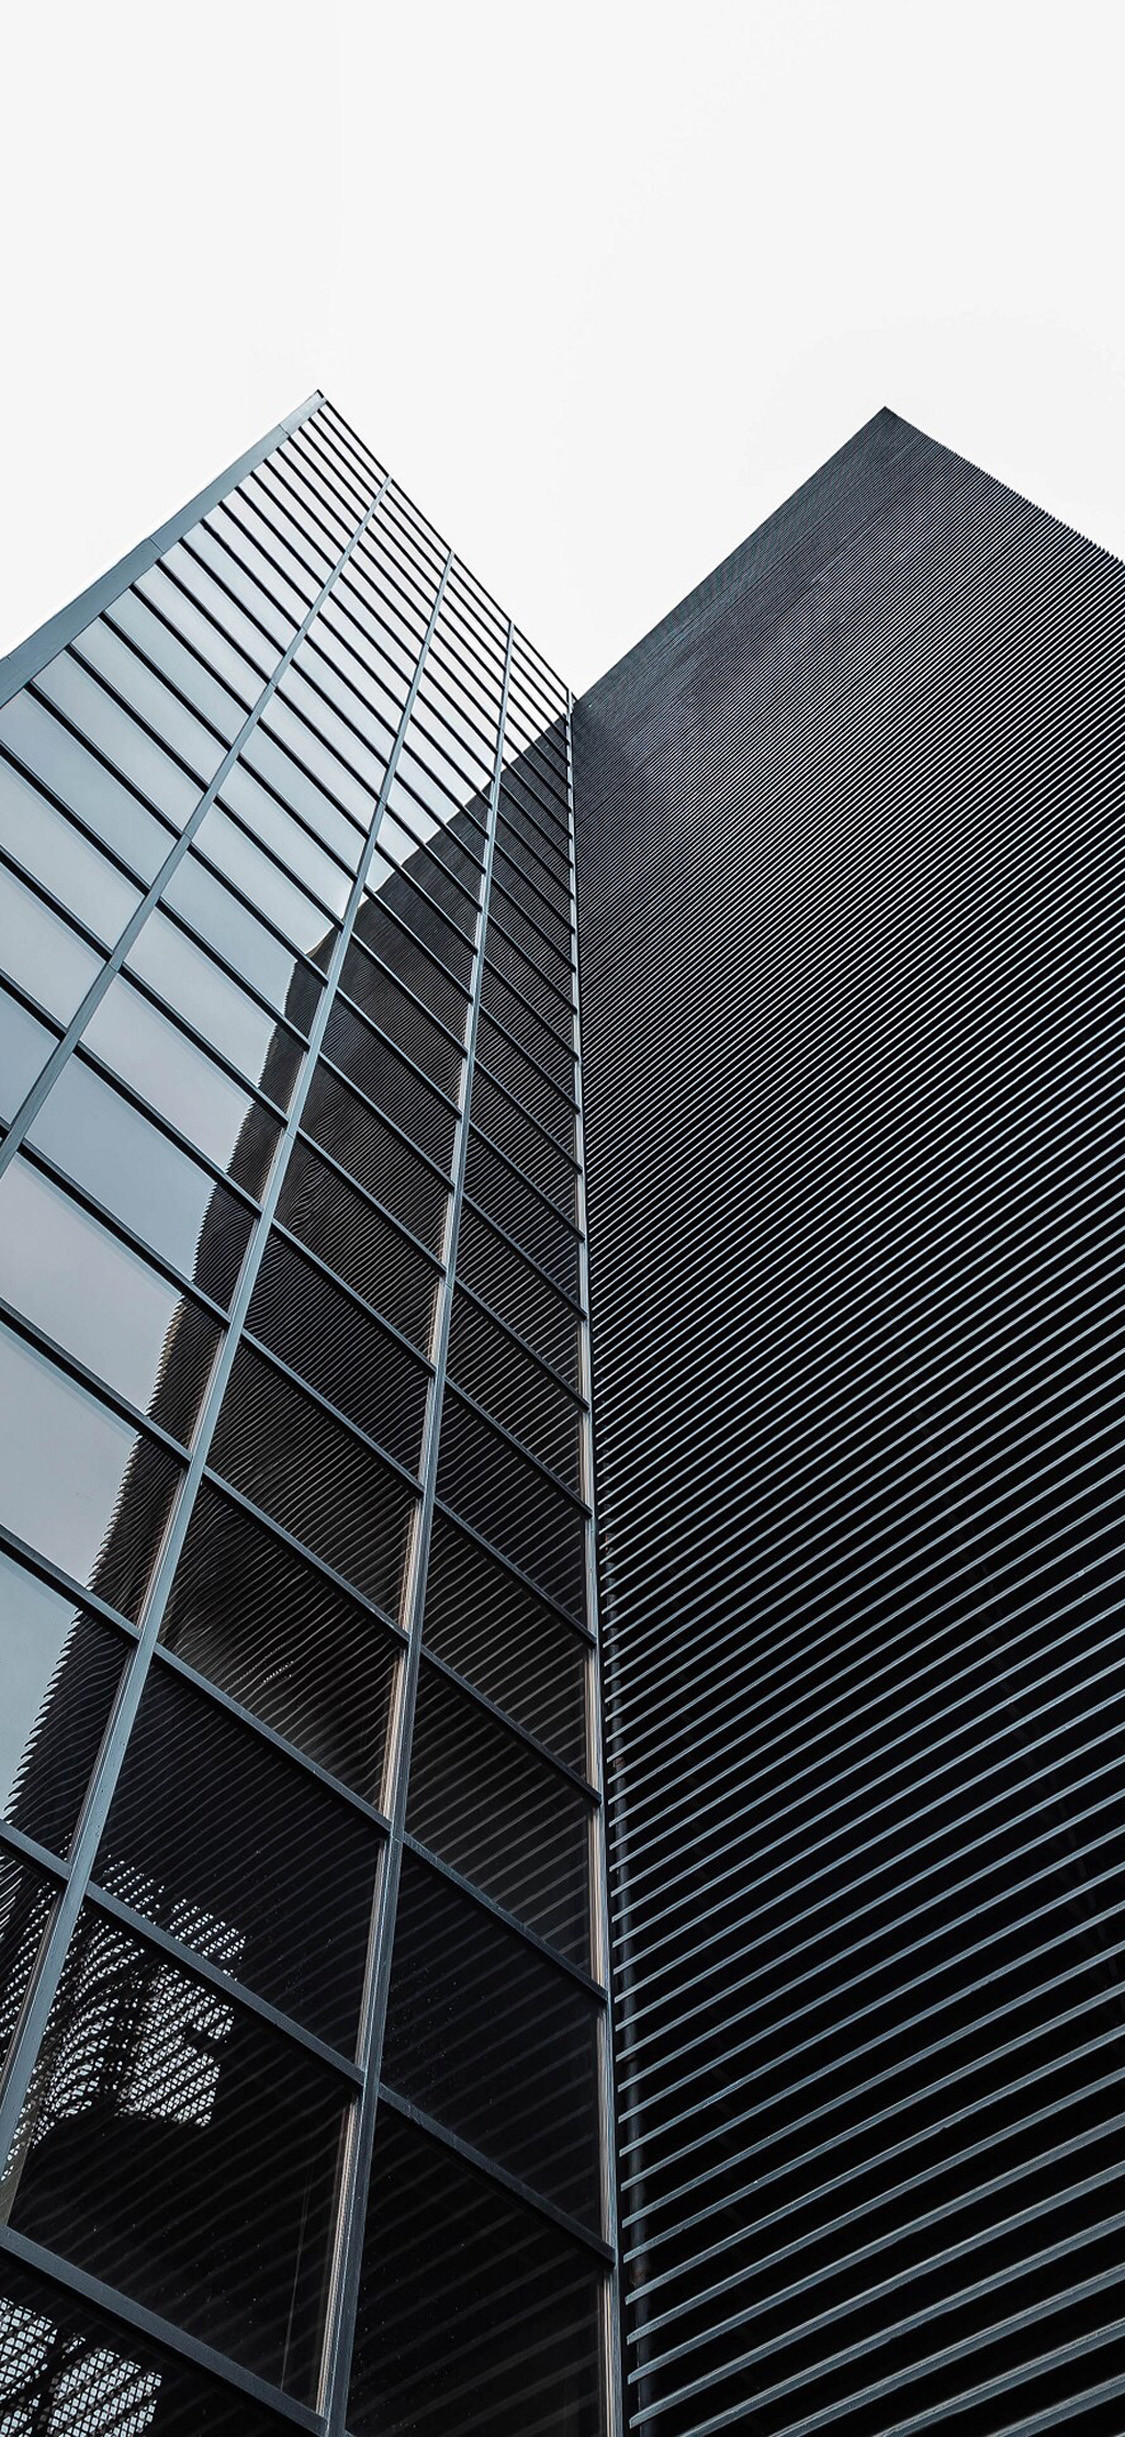 perspectiva fondo de pantalla,edificio comercial,arquitectura,rascacielos,fachada,edificio